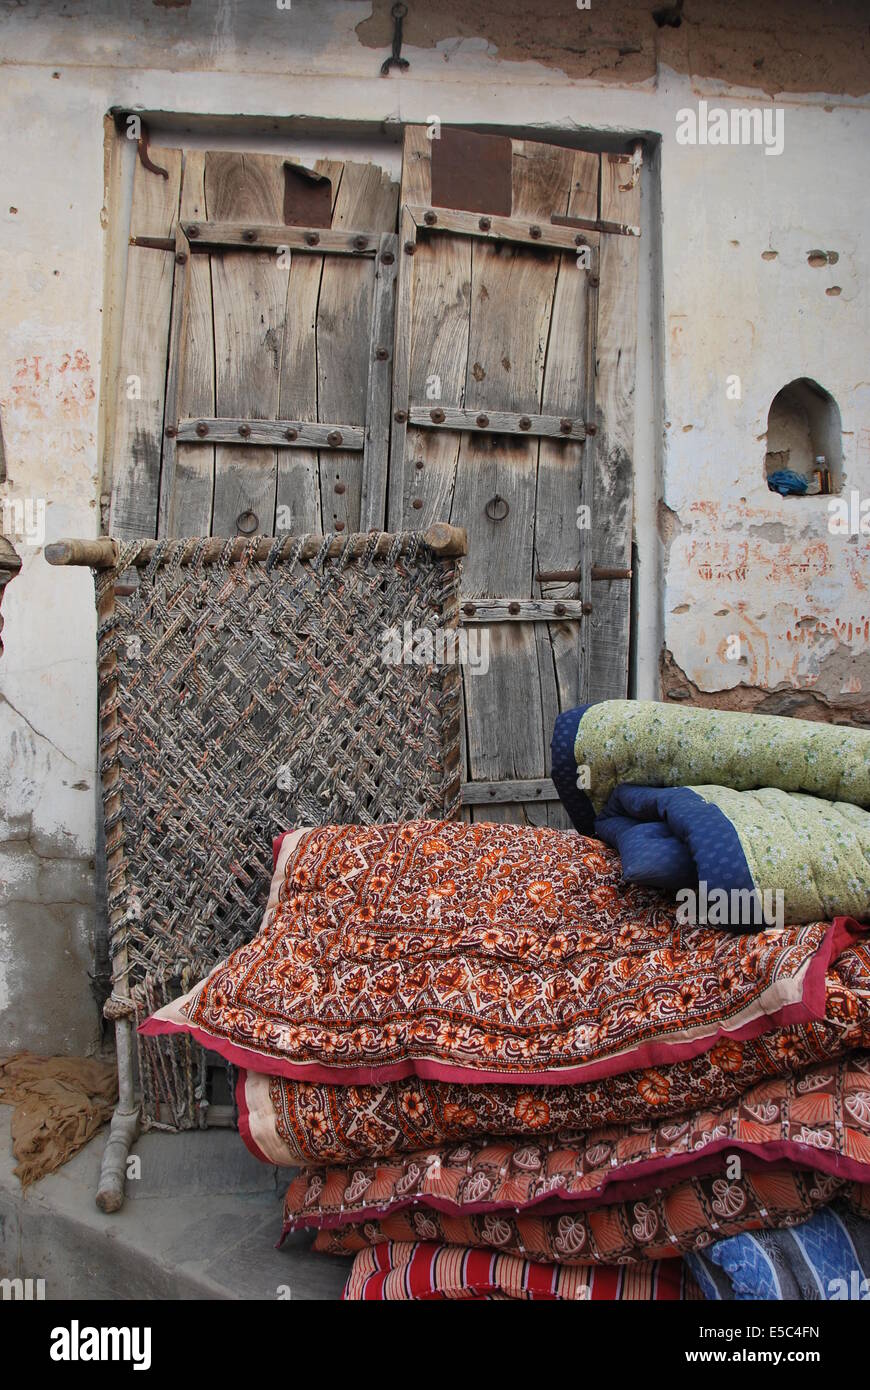 India. Il Rajasthan. La scena del villaggio. Porta in legno. Muro intonacato. Letto. Durries.tessili. Materiale modellato. Foto Stock